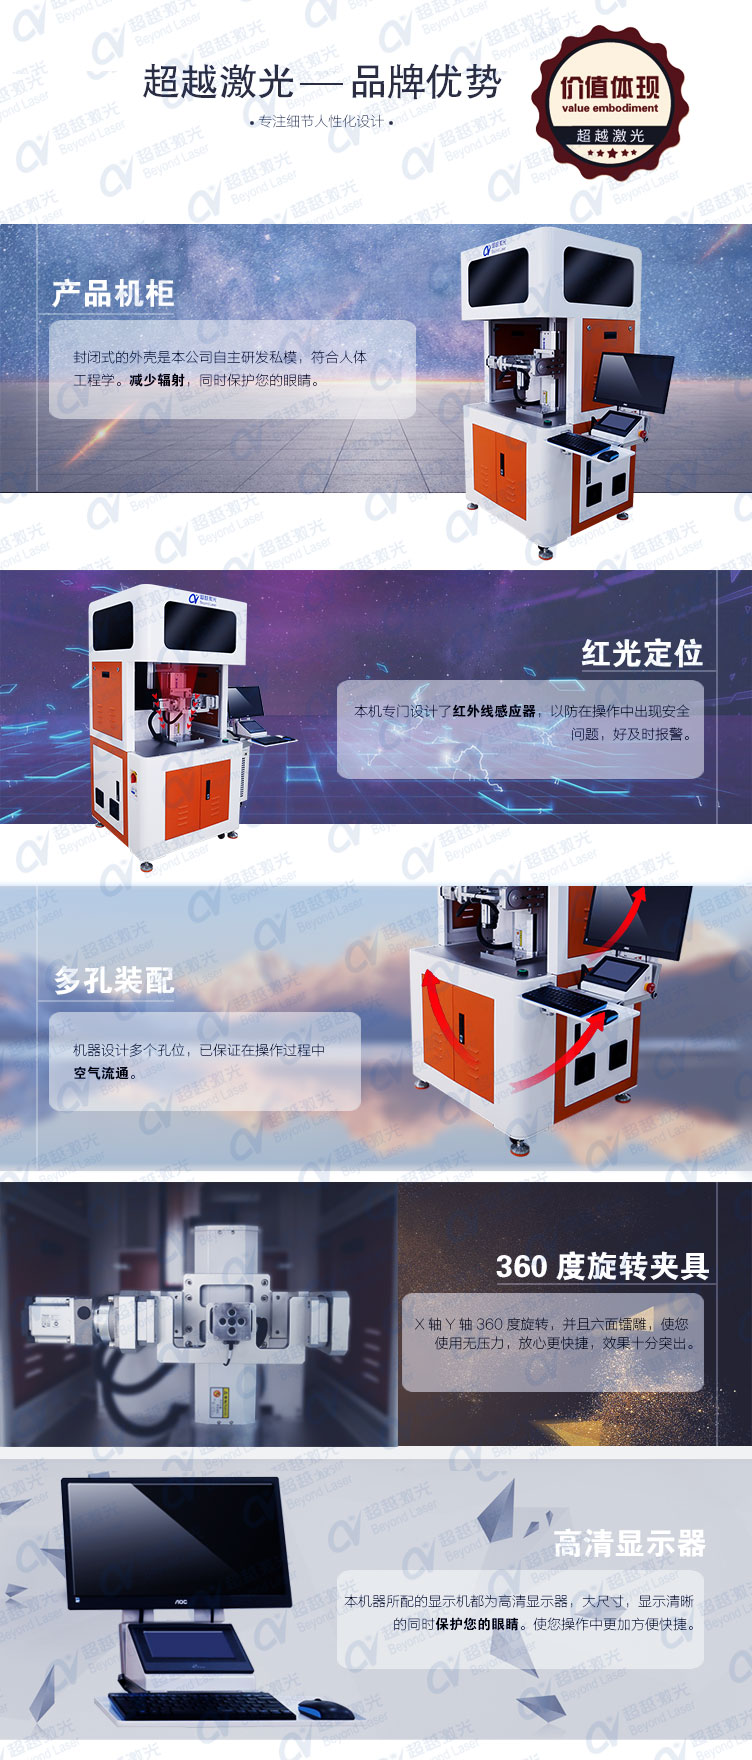 sizhou六面激光打标机